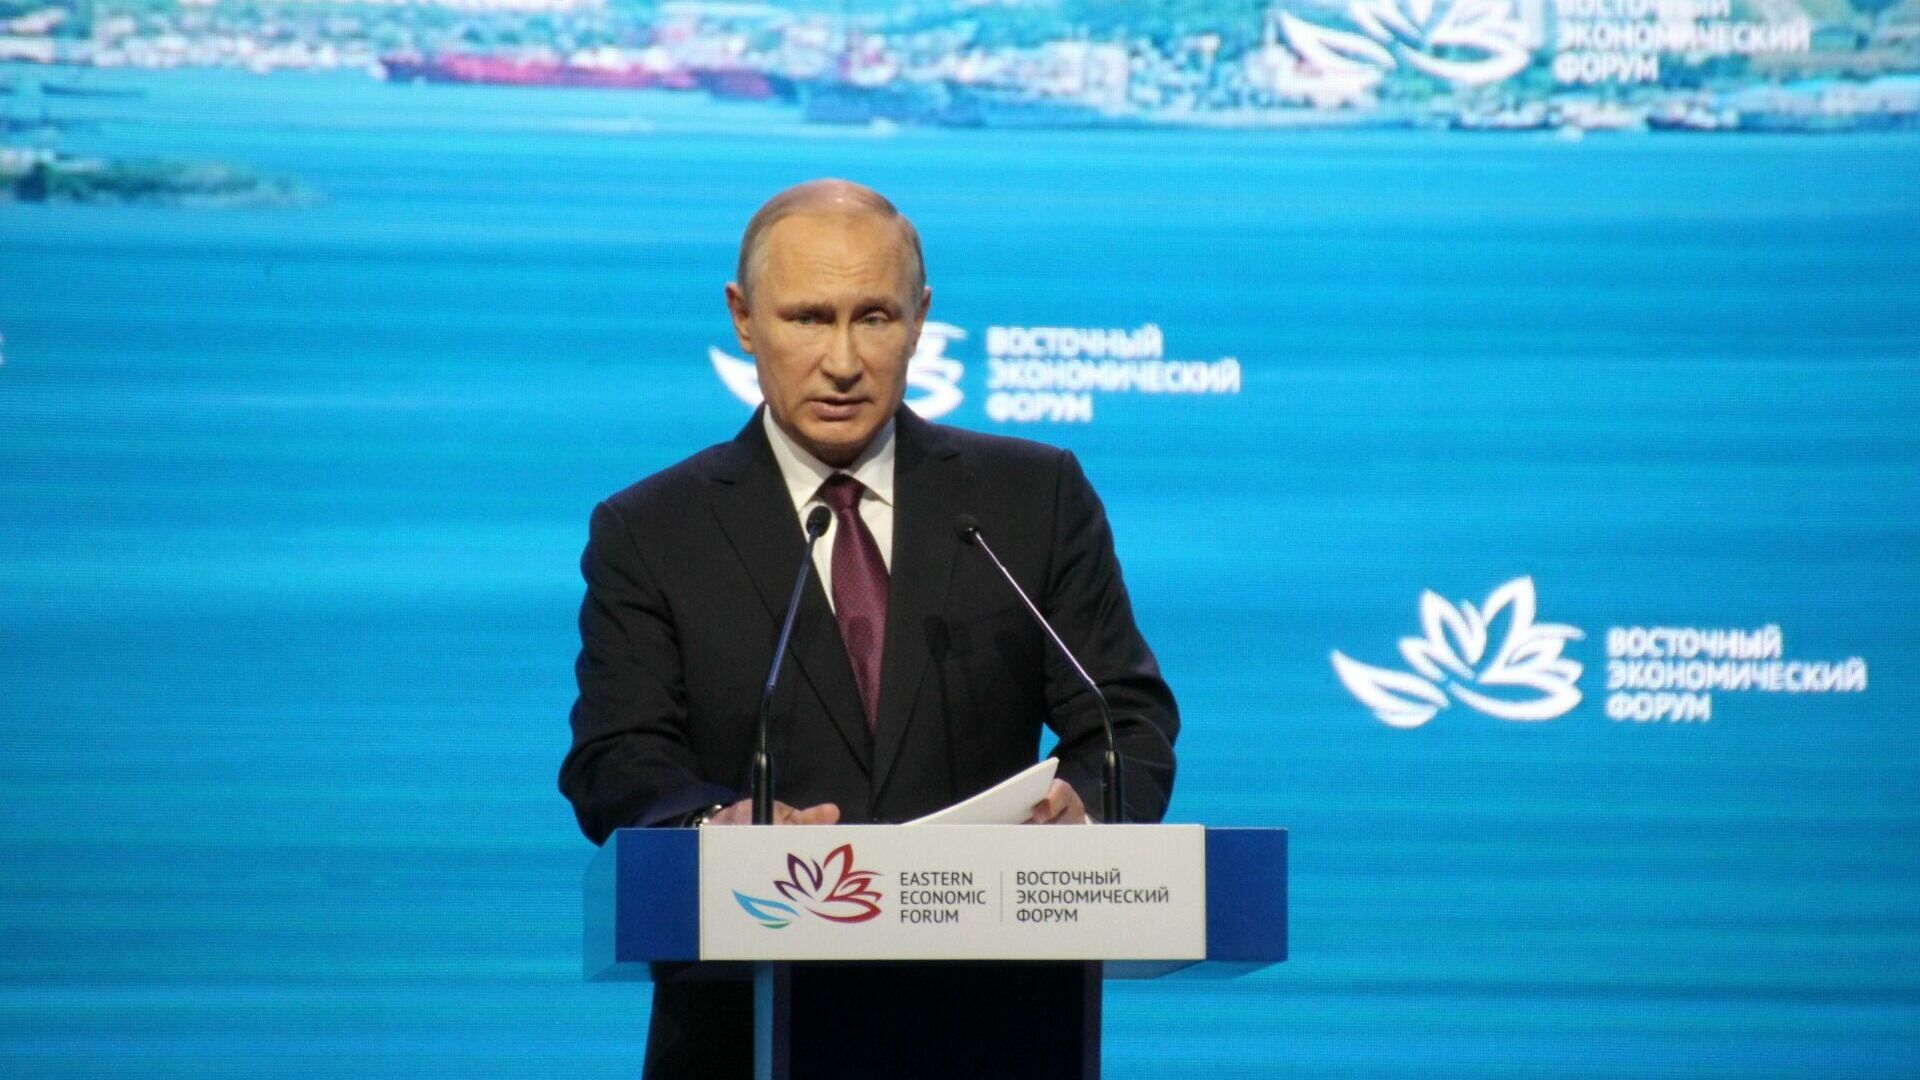 Владимир Путин: Запад выпустил джинна из бутылки и погрузил целые регионы в хаос